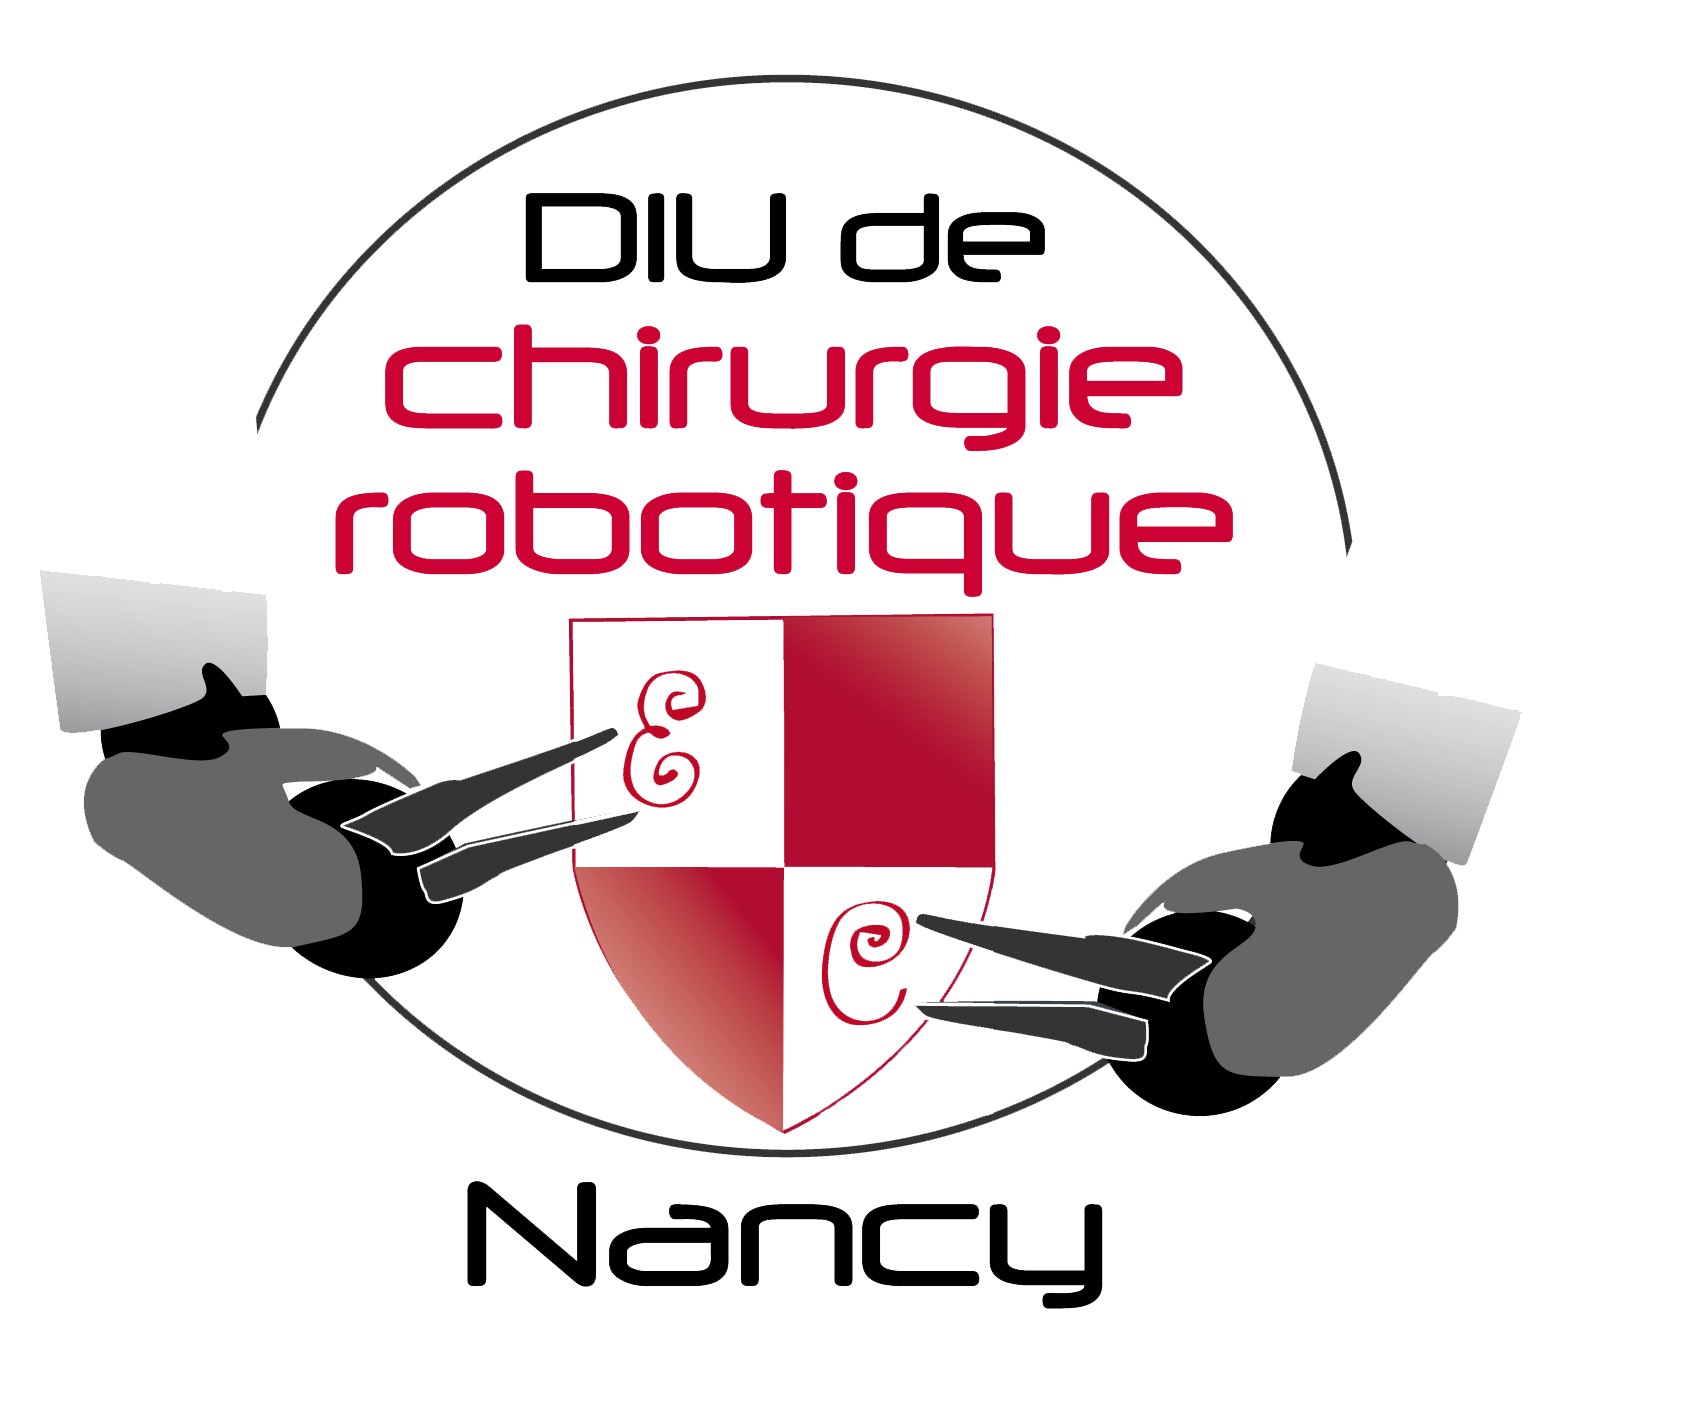 DIU de chirurgie robotique Nancy 2012 - Videotransmission et videotheque